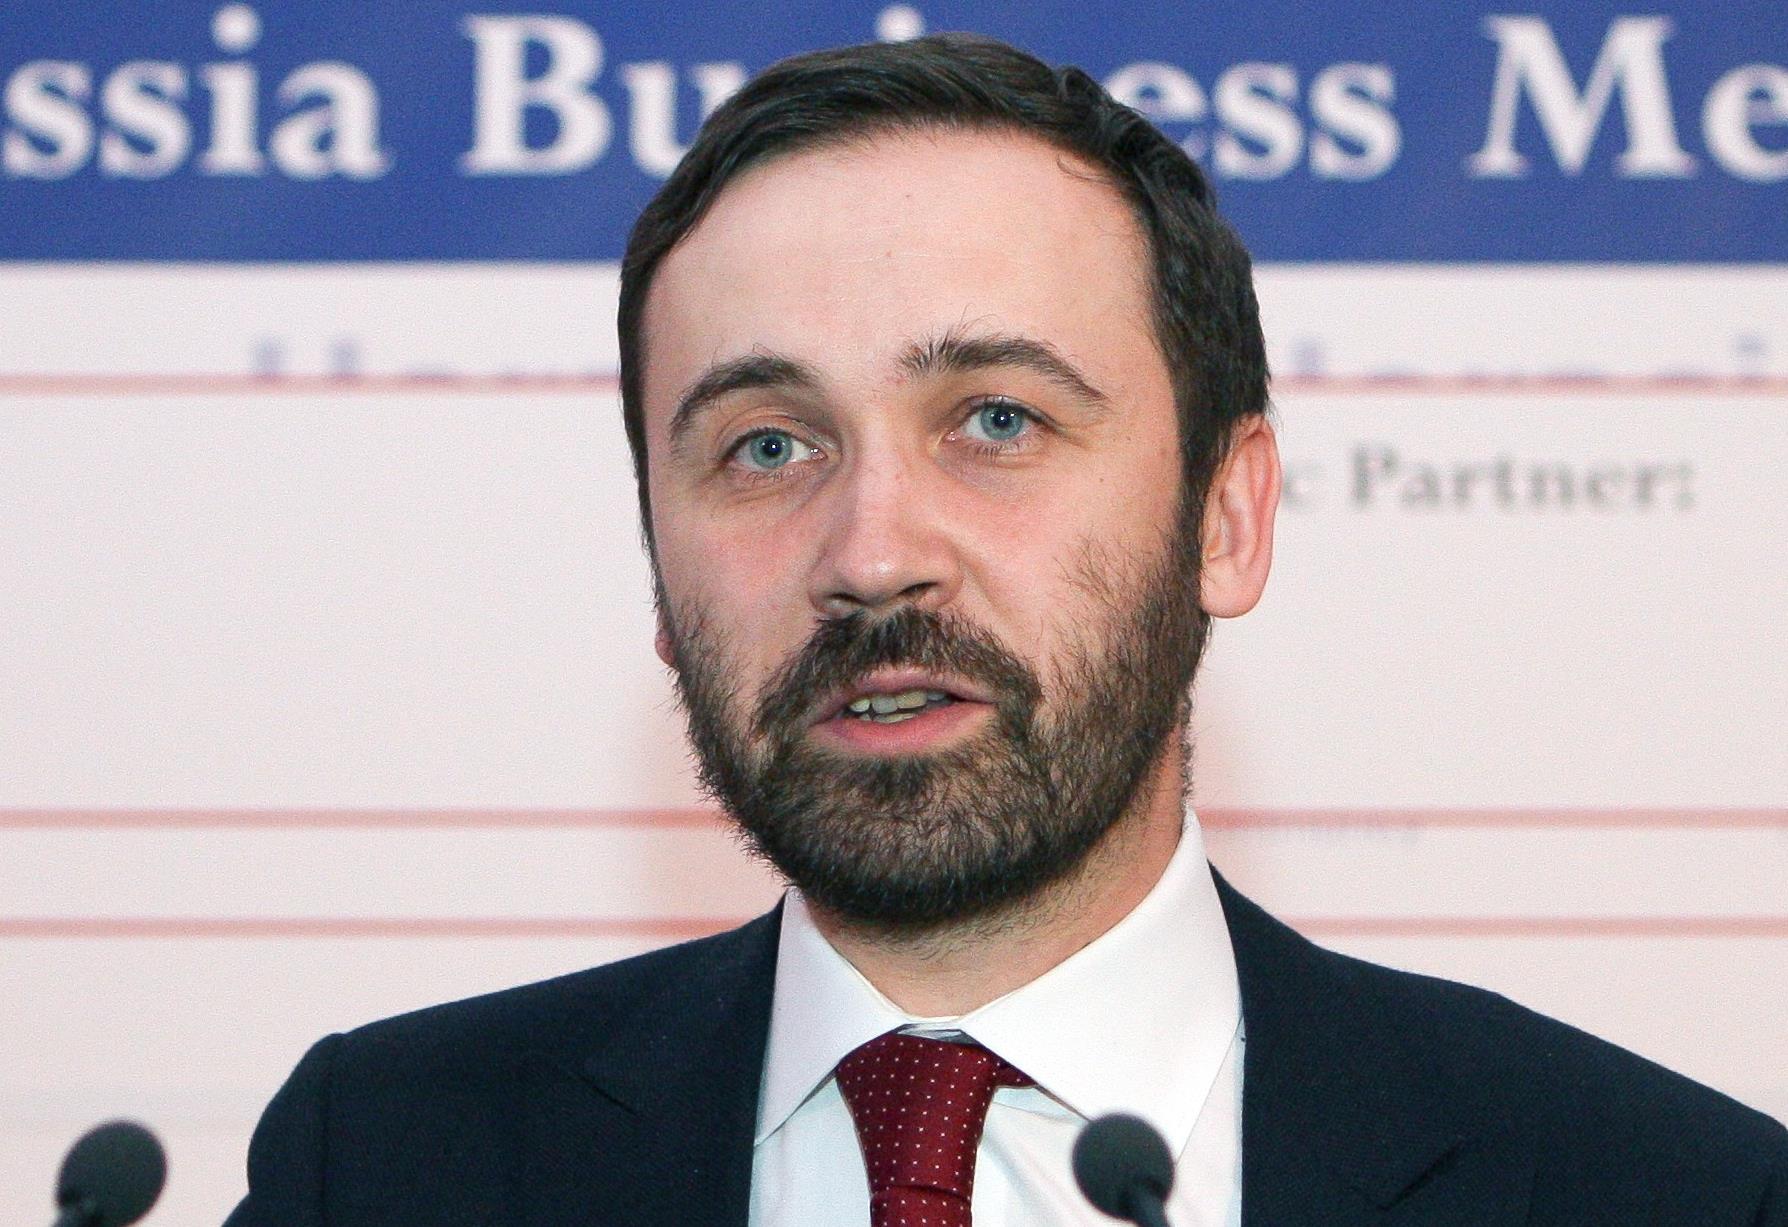 Ιδού ο μοναδικός βουλευτής που ψήφισε «νιετ» στην προσάρτηση της Κριμαίας